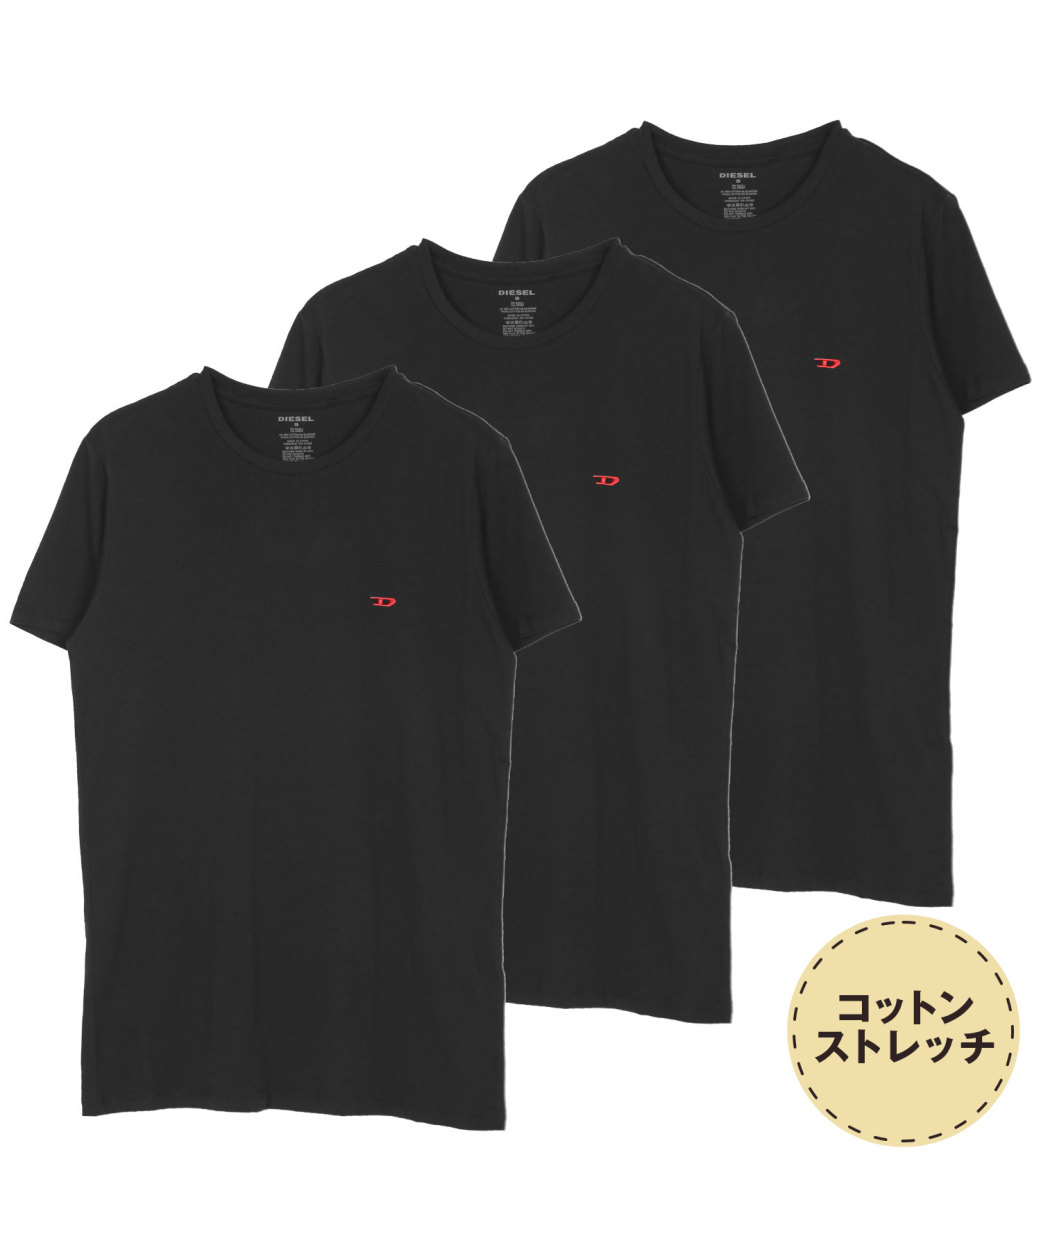 Tシャツ メンズ DIESEL ディーゼル カットソー 3枚セット 綿 コットン ブランド シンプル ブレイブマン プレゼント インナー